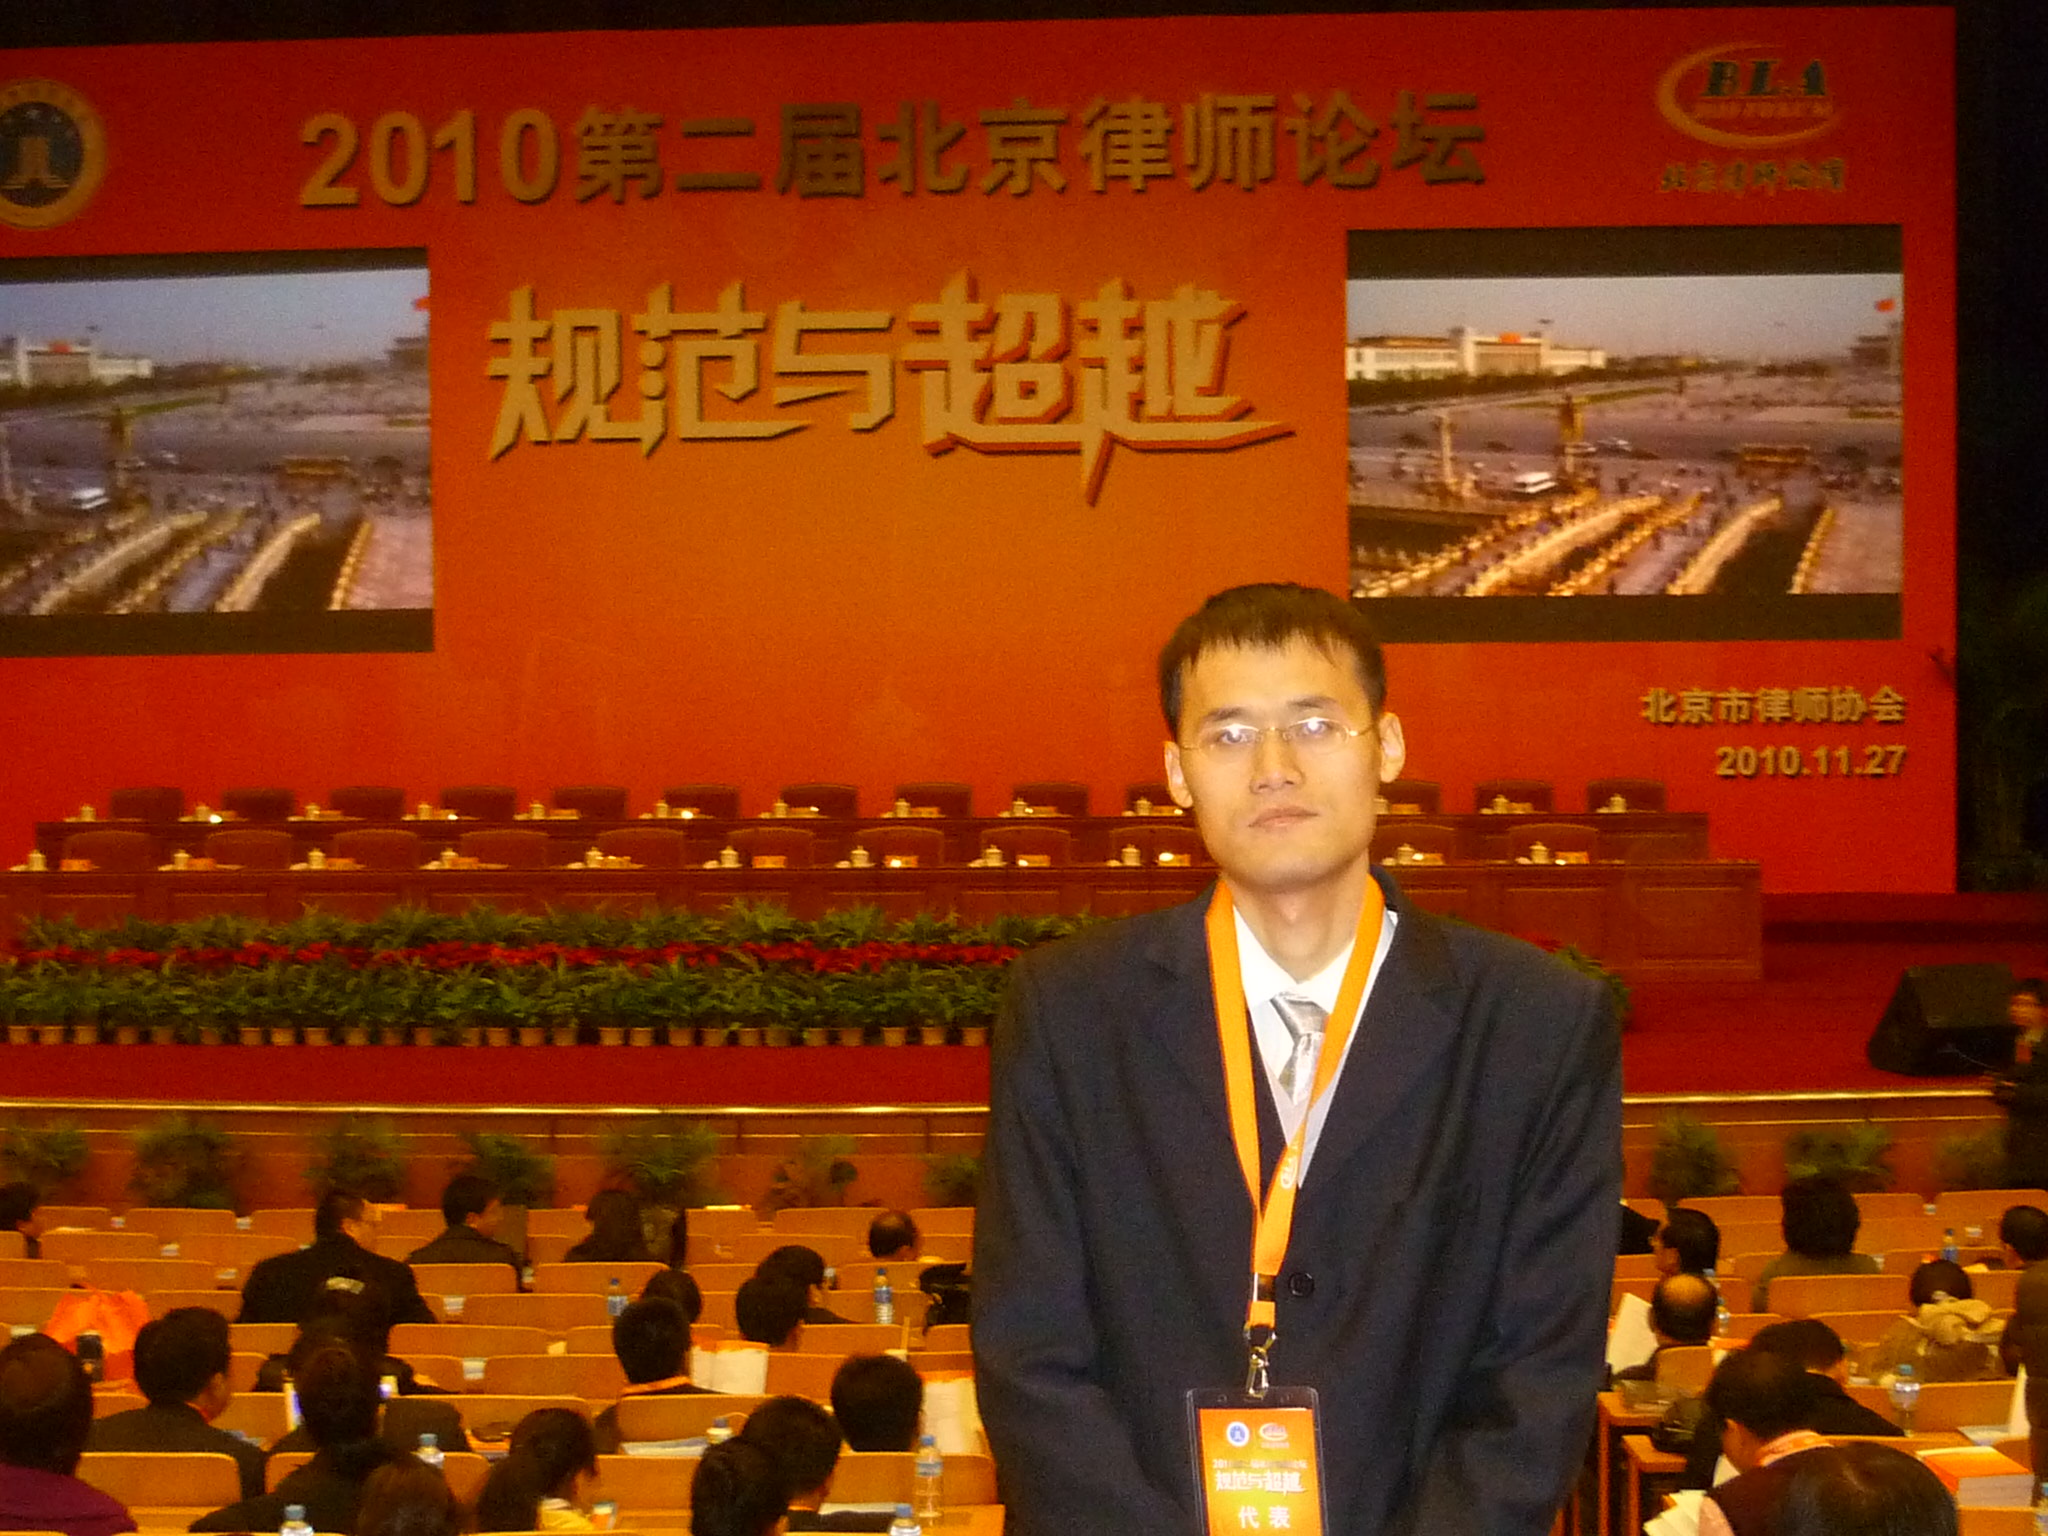 朱瑞雷律师出席第二届北京律师论坛